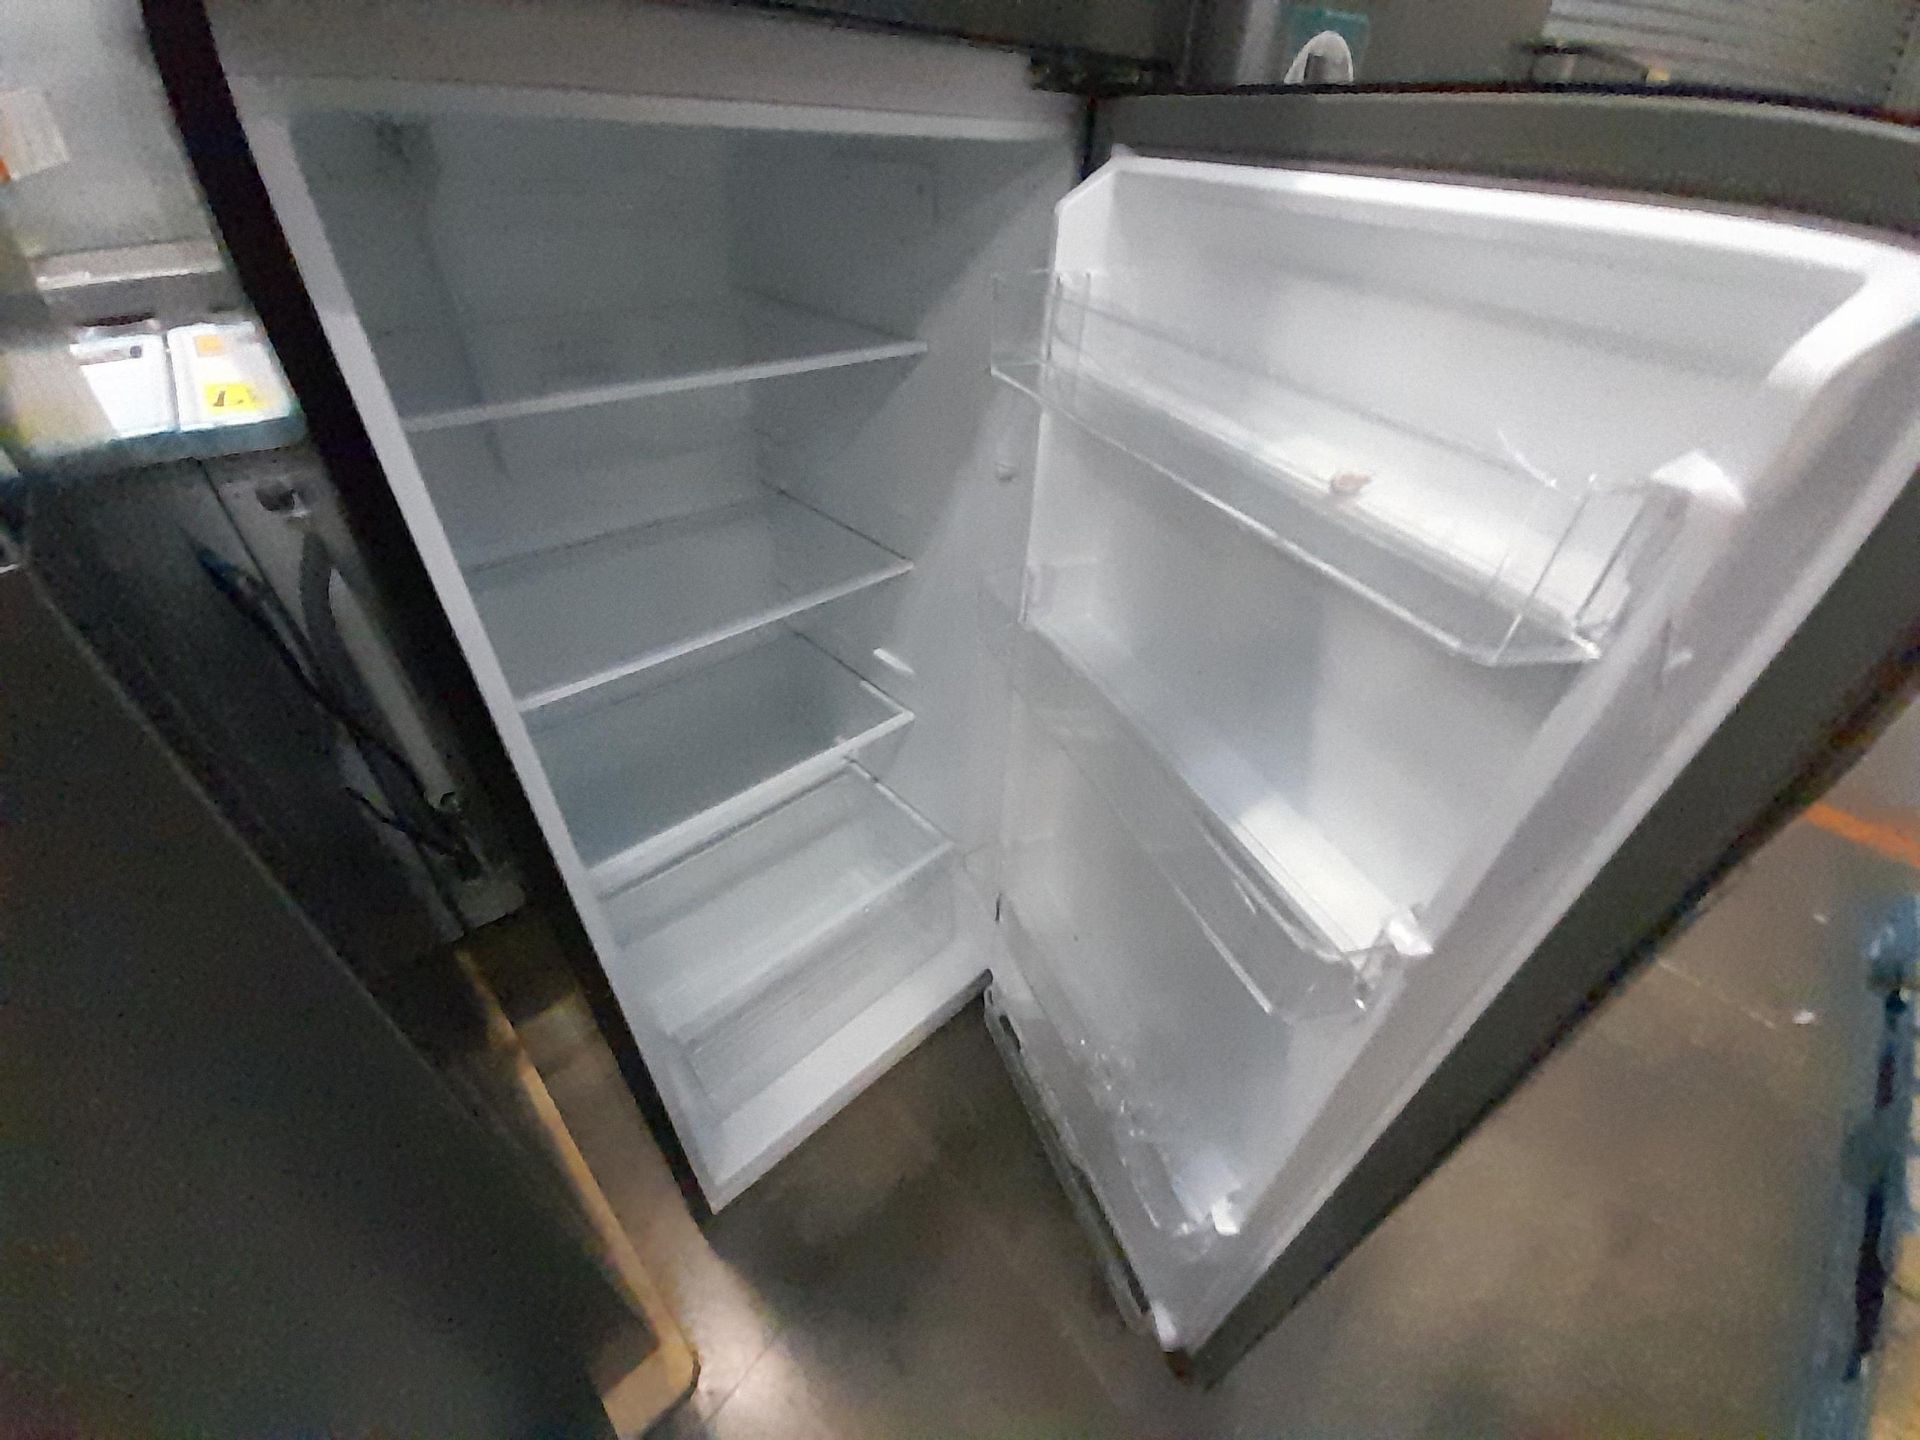 Lote de 2 refrigeradores contiene: 1 refrigerador Marca WHIRPOOL, Modelo WT1230K, Serie ND, Color G - Image 4 of 8